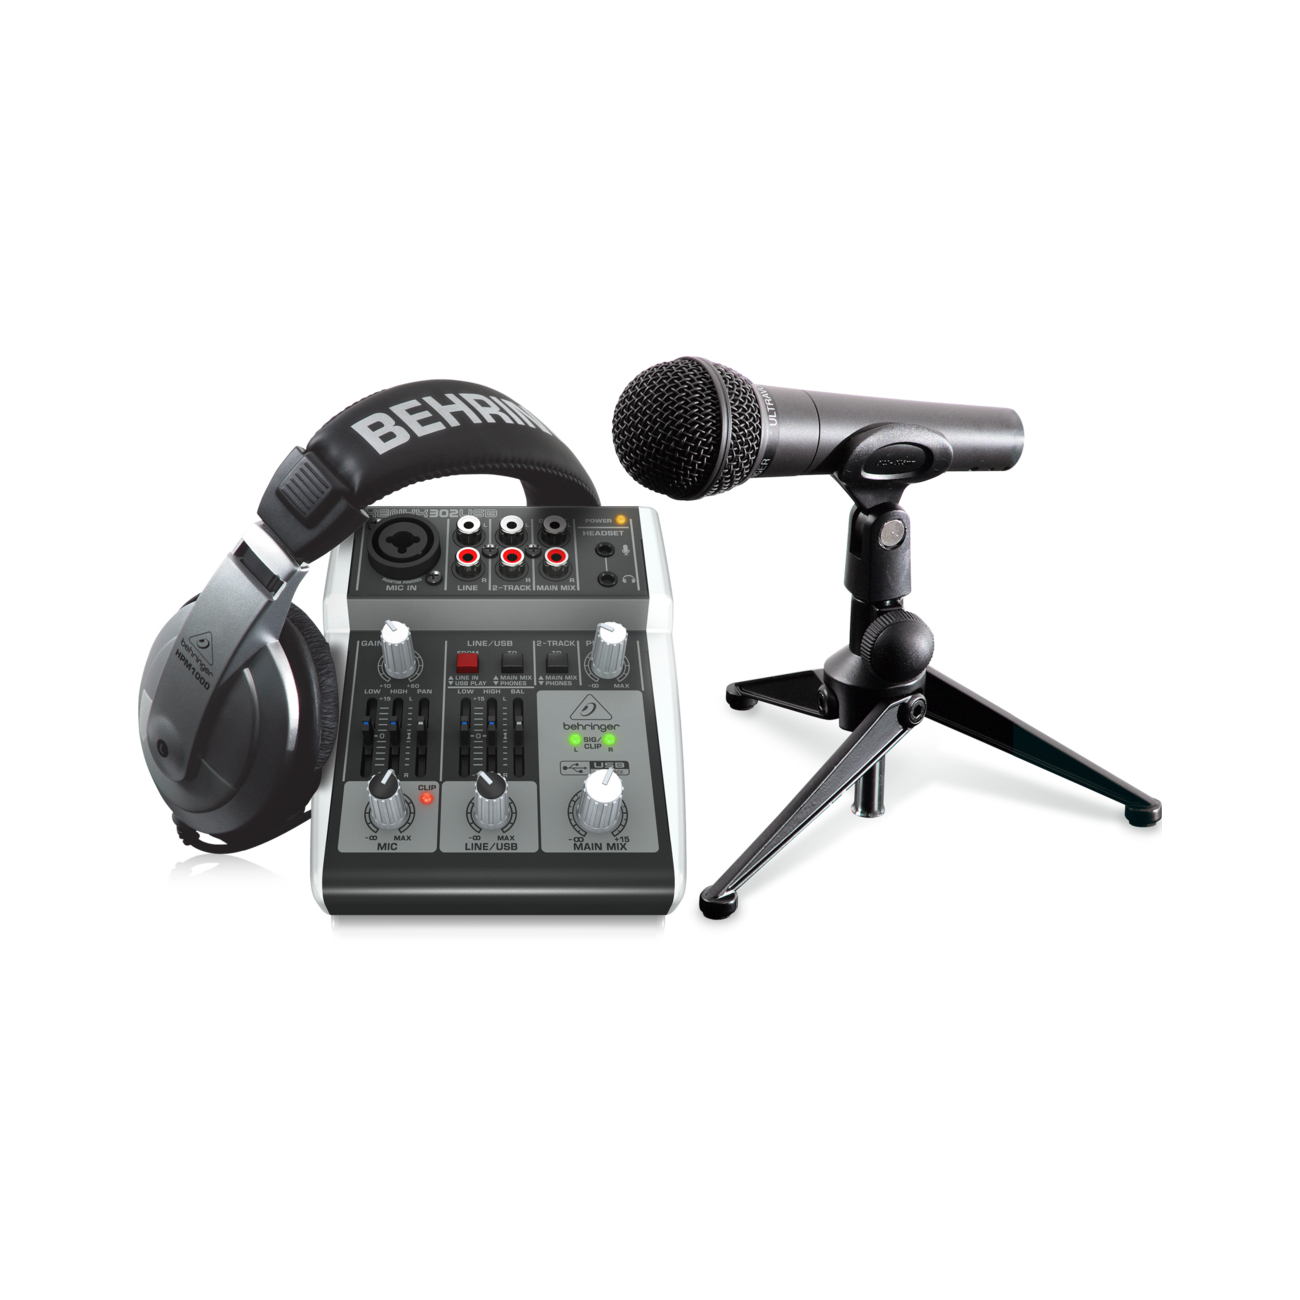 Портастудии Behringer Podcastudio 2 USB студийные микрофоны behringer bv44